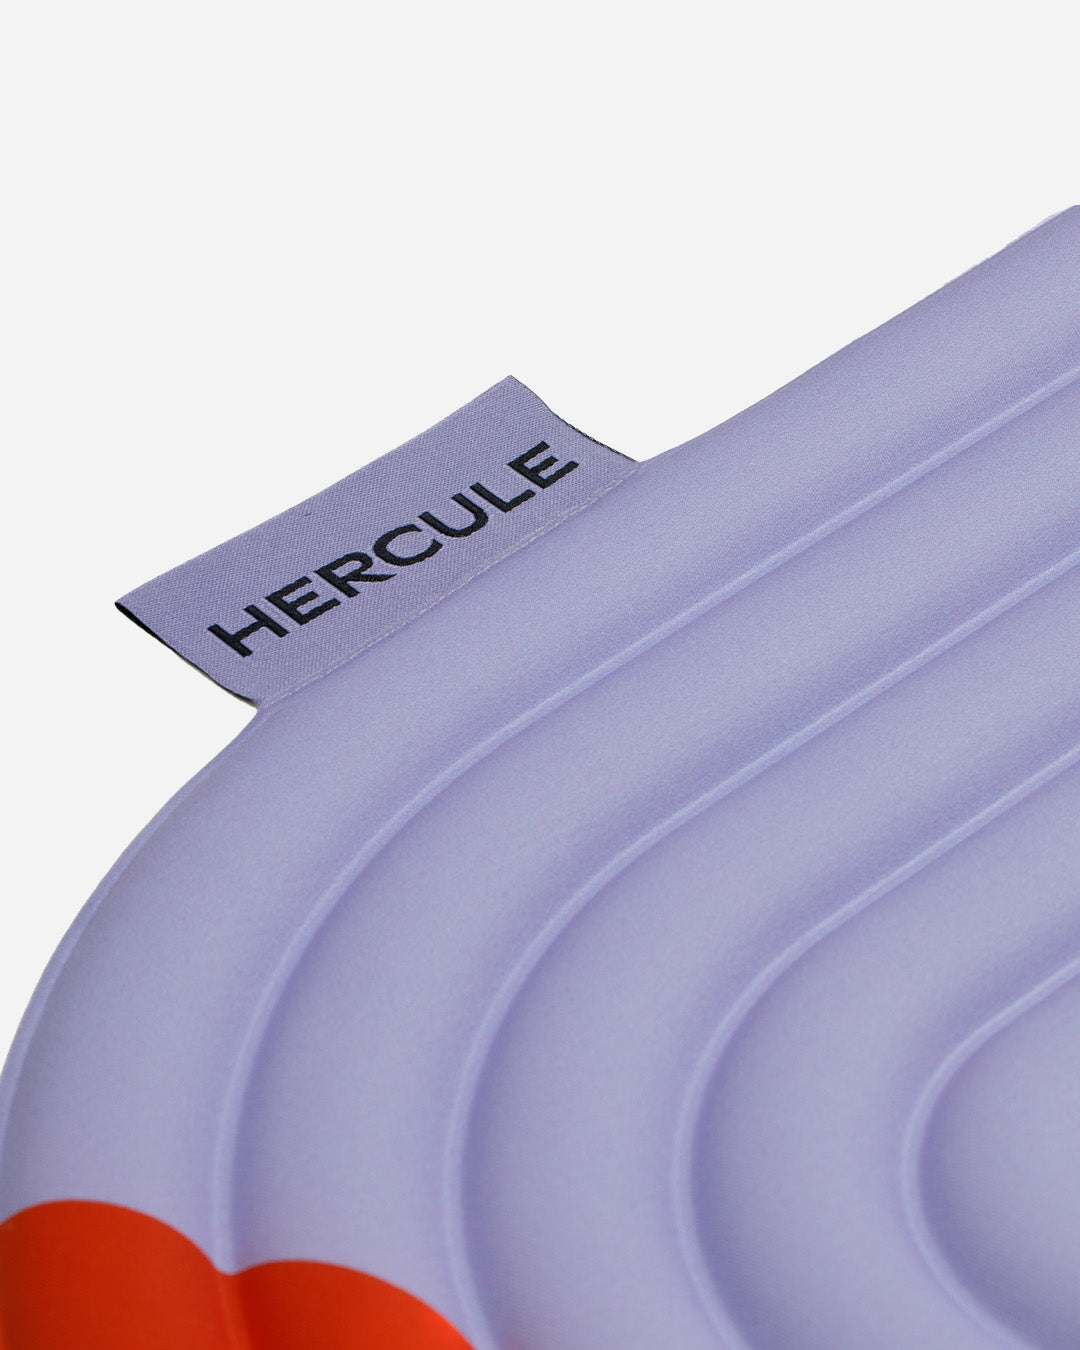 Mini tapis de sol pad de confort de la marque hercule studio modèle galé couleur axel rouge orangé packshot zoom étiquette